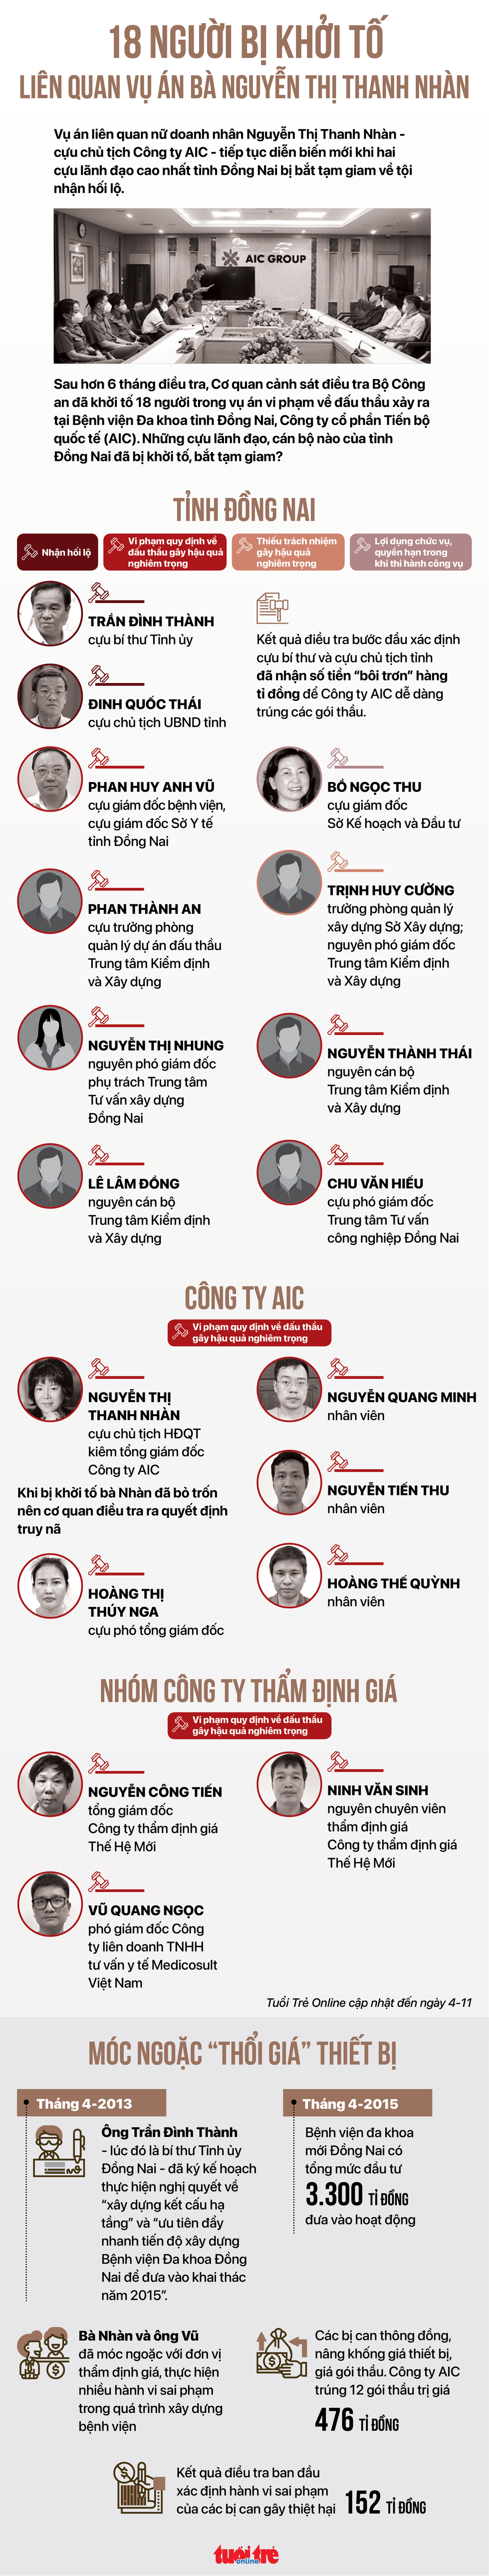 18 người bị khởi tố liên quan vụ án bà Nguyễn Thị Thanh Nhàn - Ảnh 1.